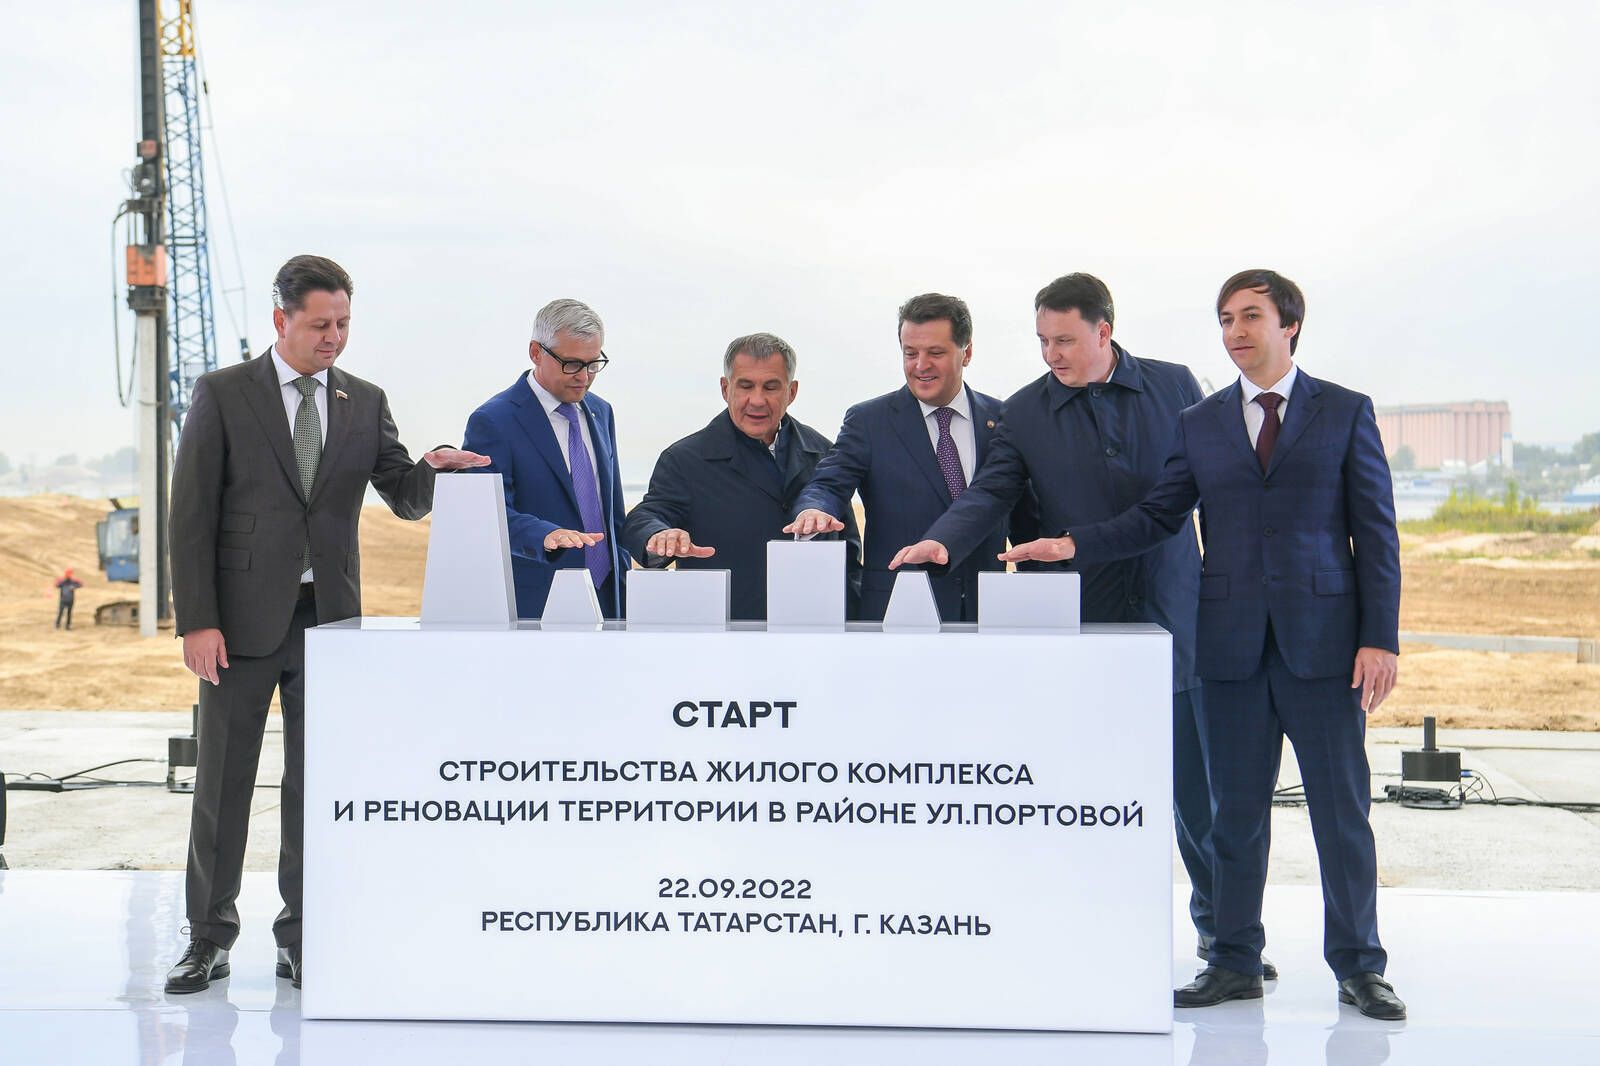 Минниханов дал старт реновации территории речного порта в Казани